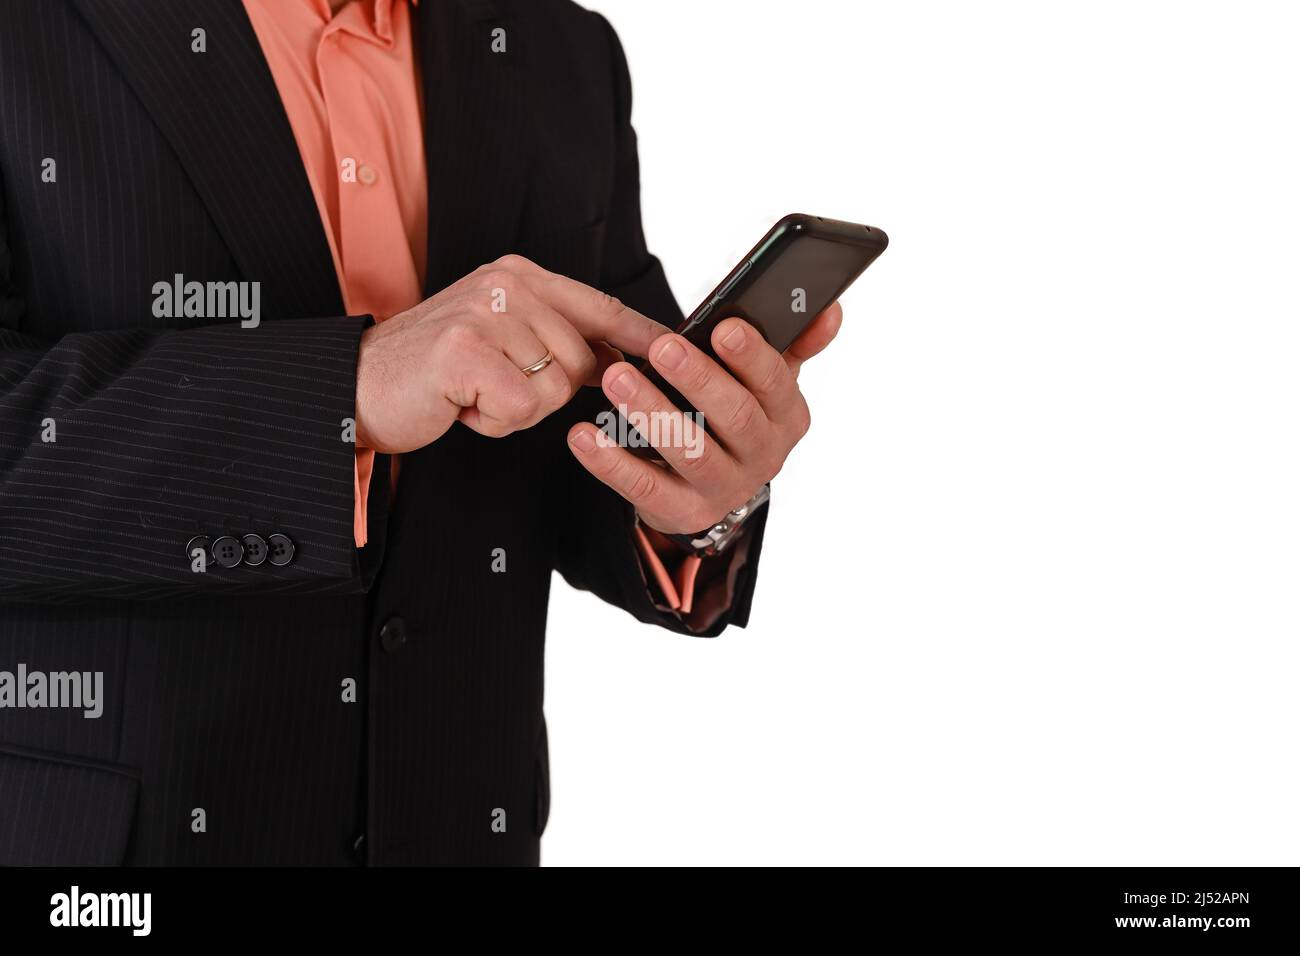 hombre de negocios en un traje mecanografiando en un teléfono móvil, aislado sobre un fondo blanco Foto de stock